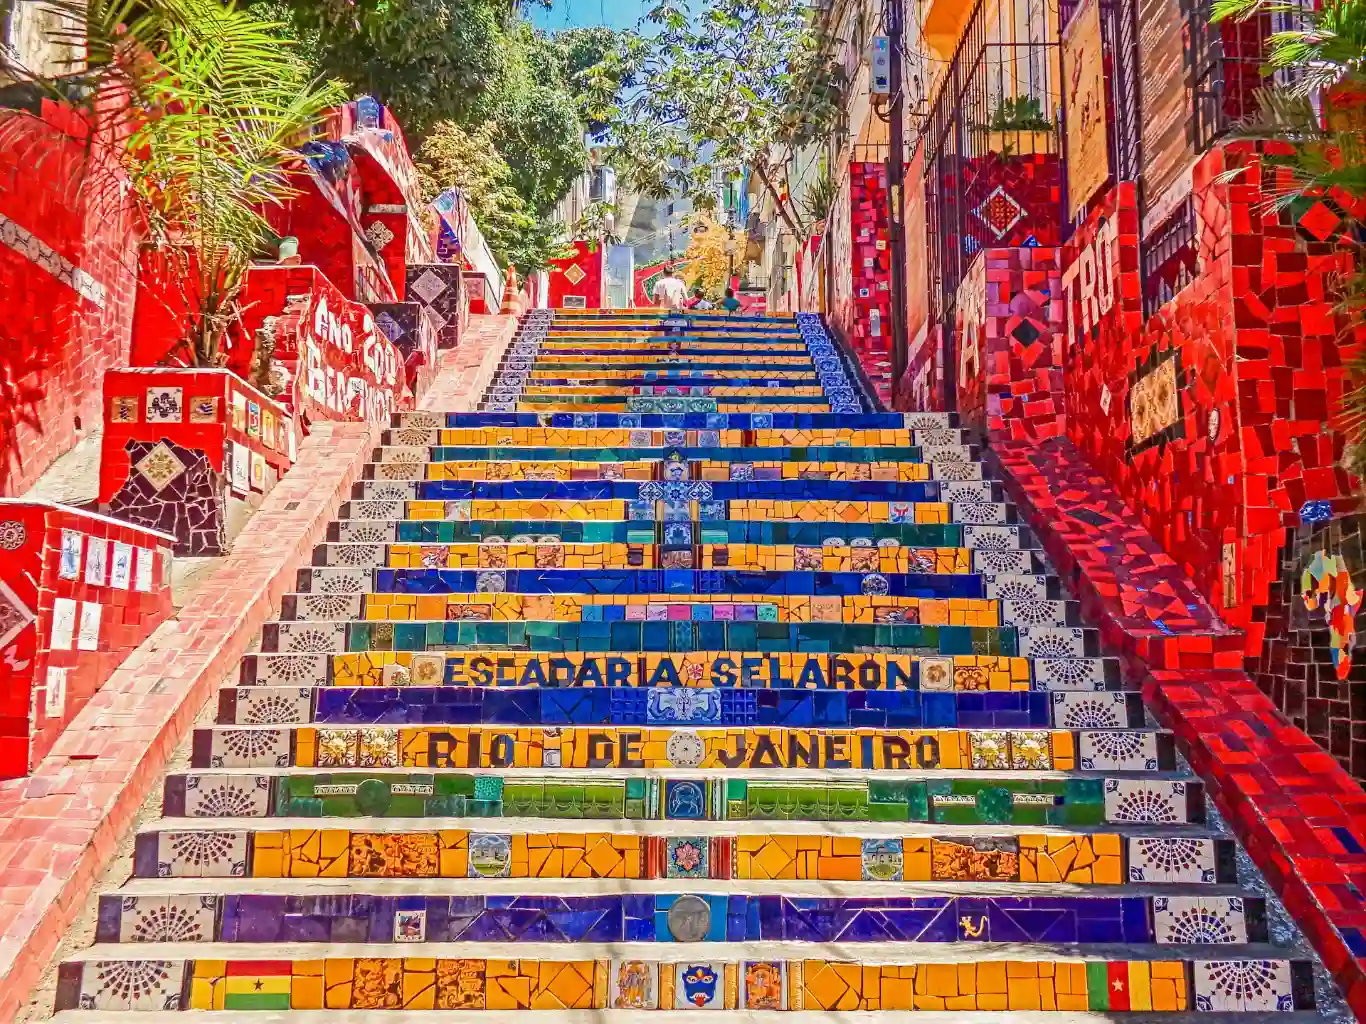 Colorful steps of the Escadaria Selarón in Rio de Janeiro.